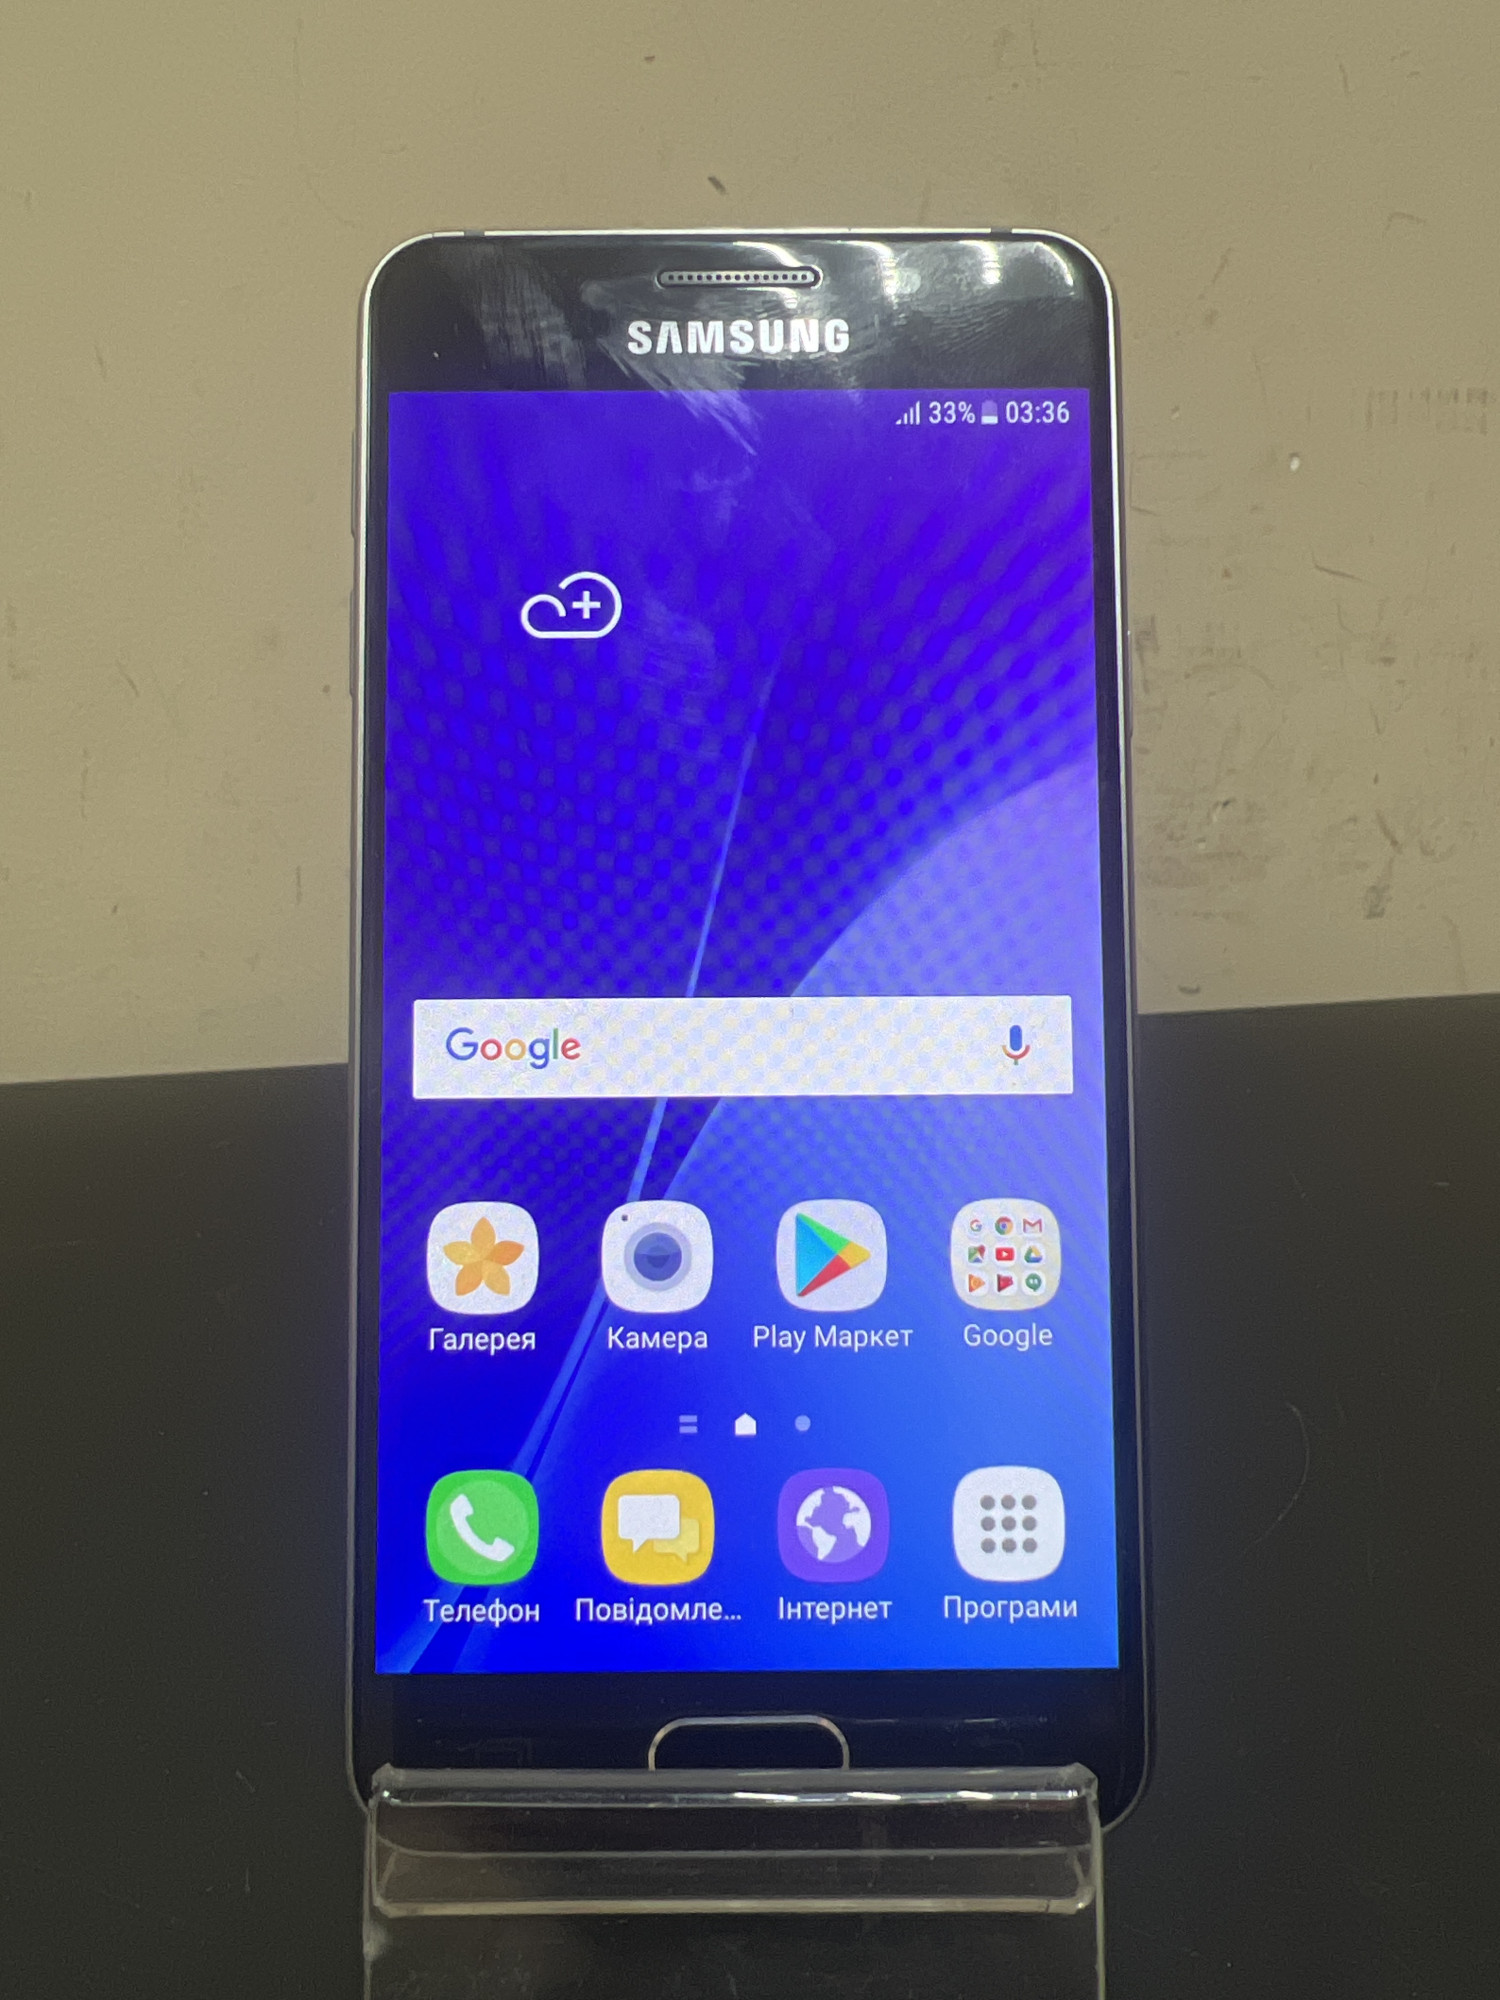 Samsung Galaxy A3 (SM-A310F) 2016 1/16Gb 0